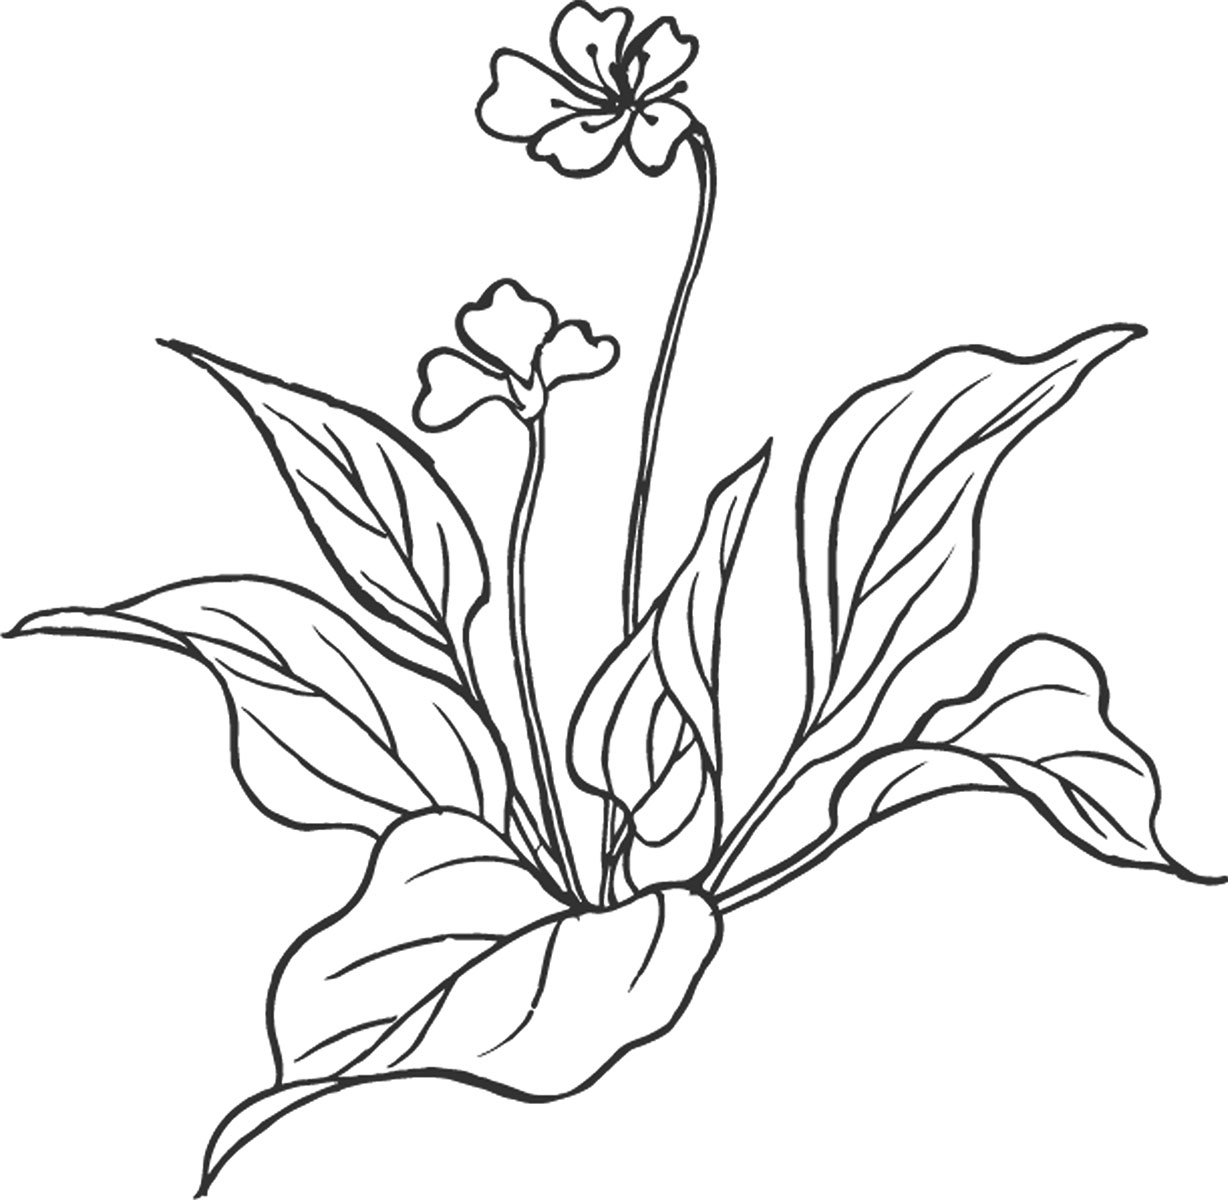 白黒の花のイラスト-白黒・手書き風・茎葉